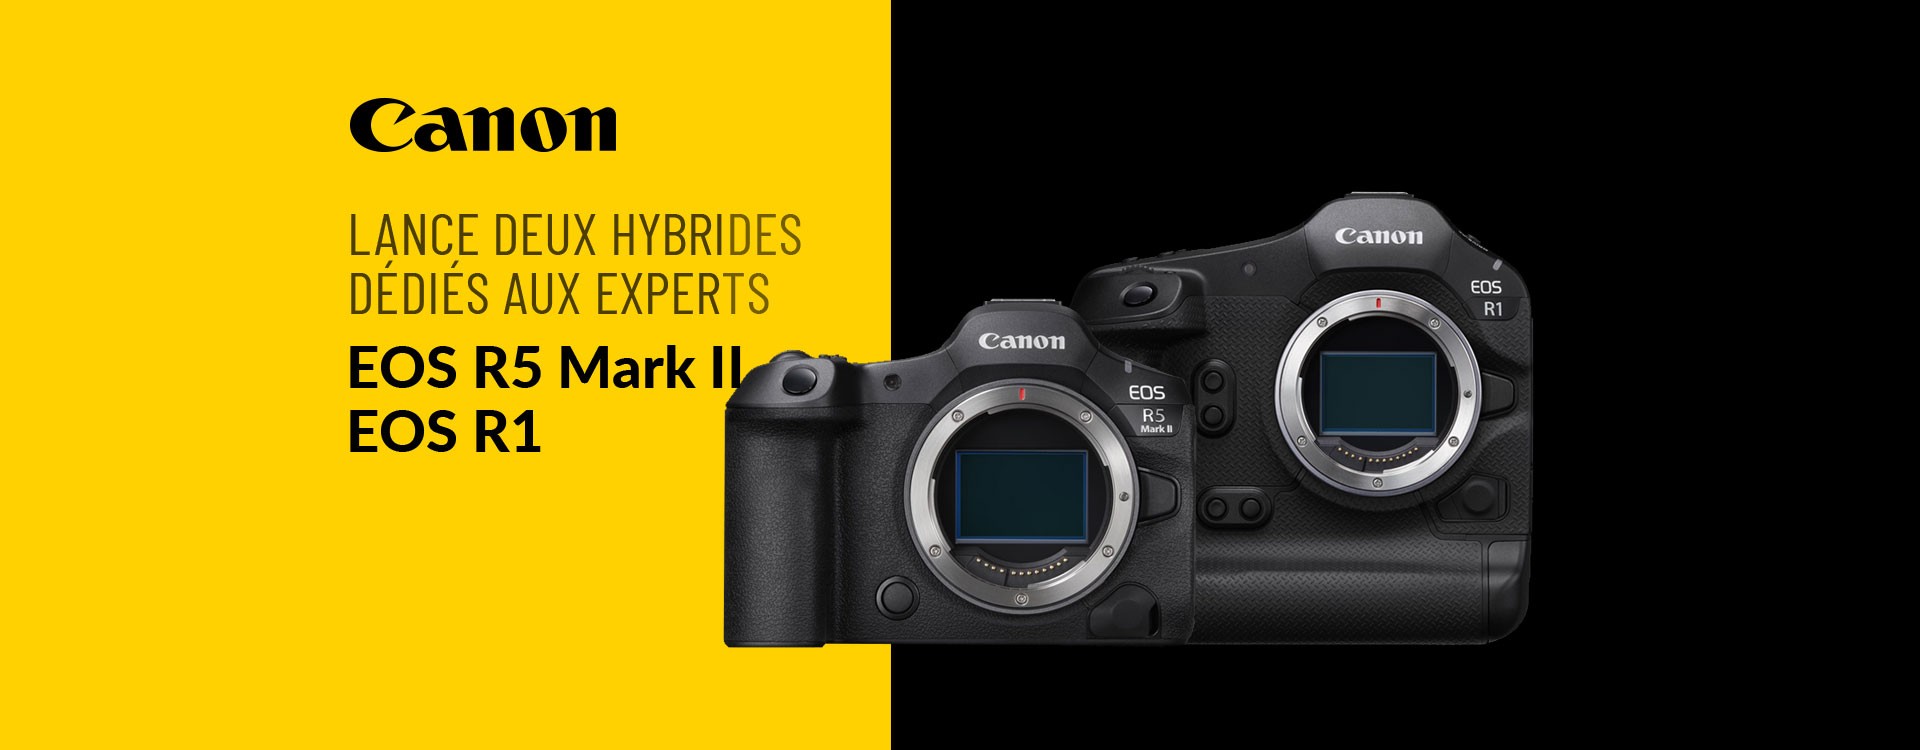 Canon lance deux hybrides dédiés aux experts : EOS R1 et l’EOS R5 Mark II